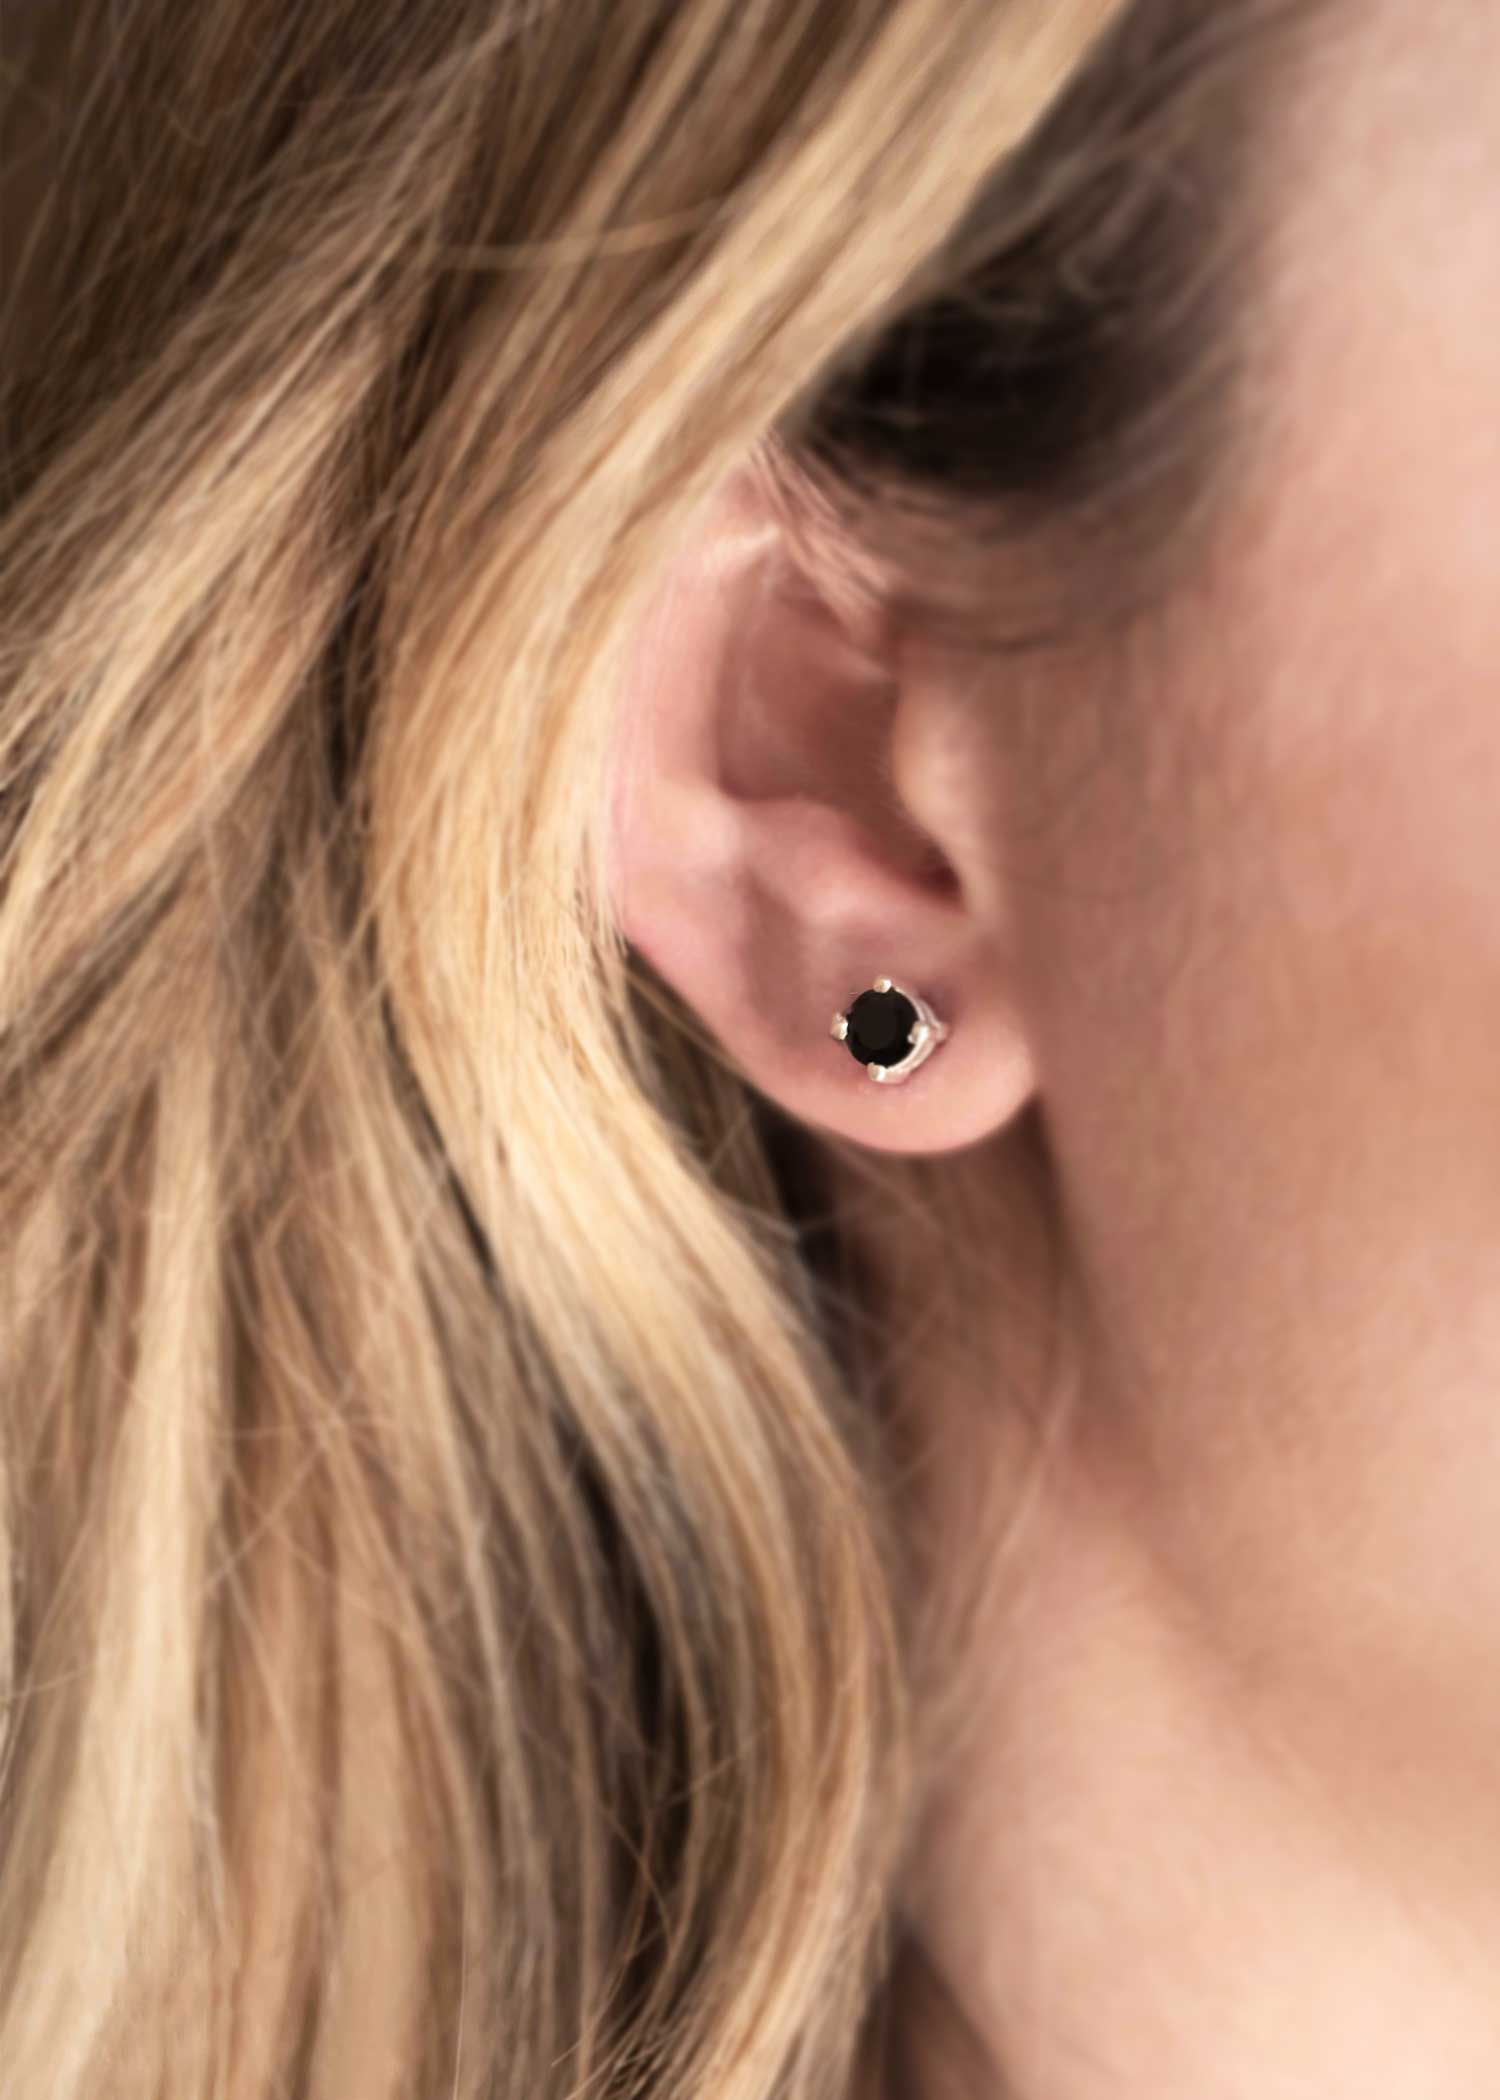 black onyx silver cartilage second piercing studs earrings Gift for teen girls girlfriend best friend